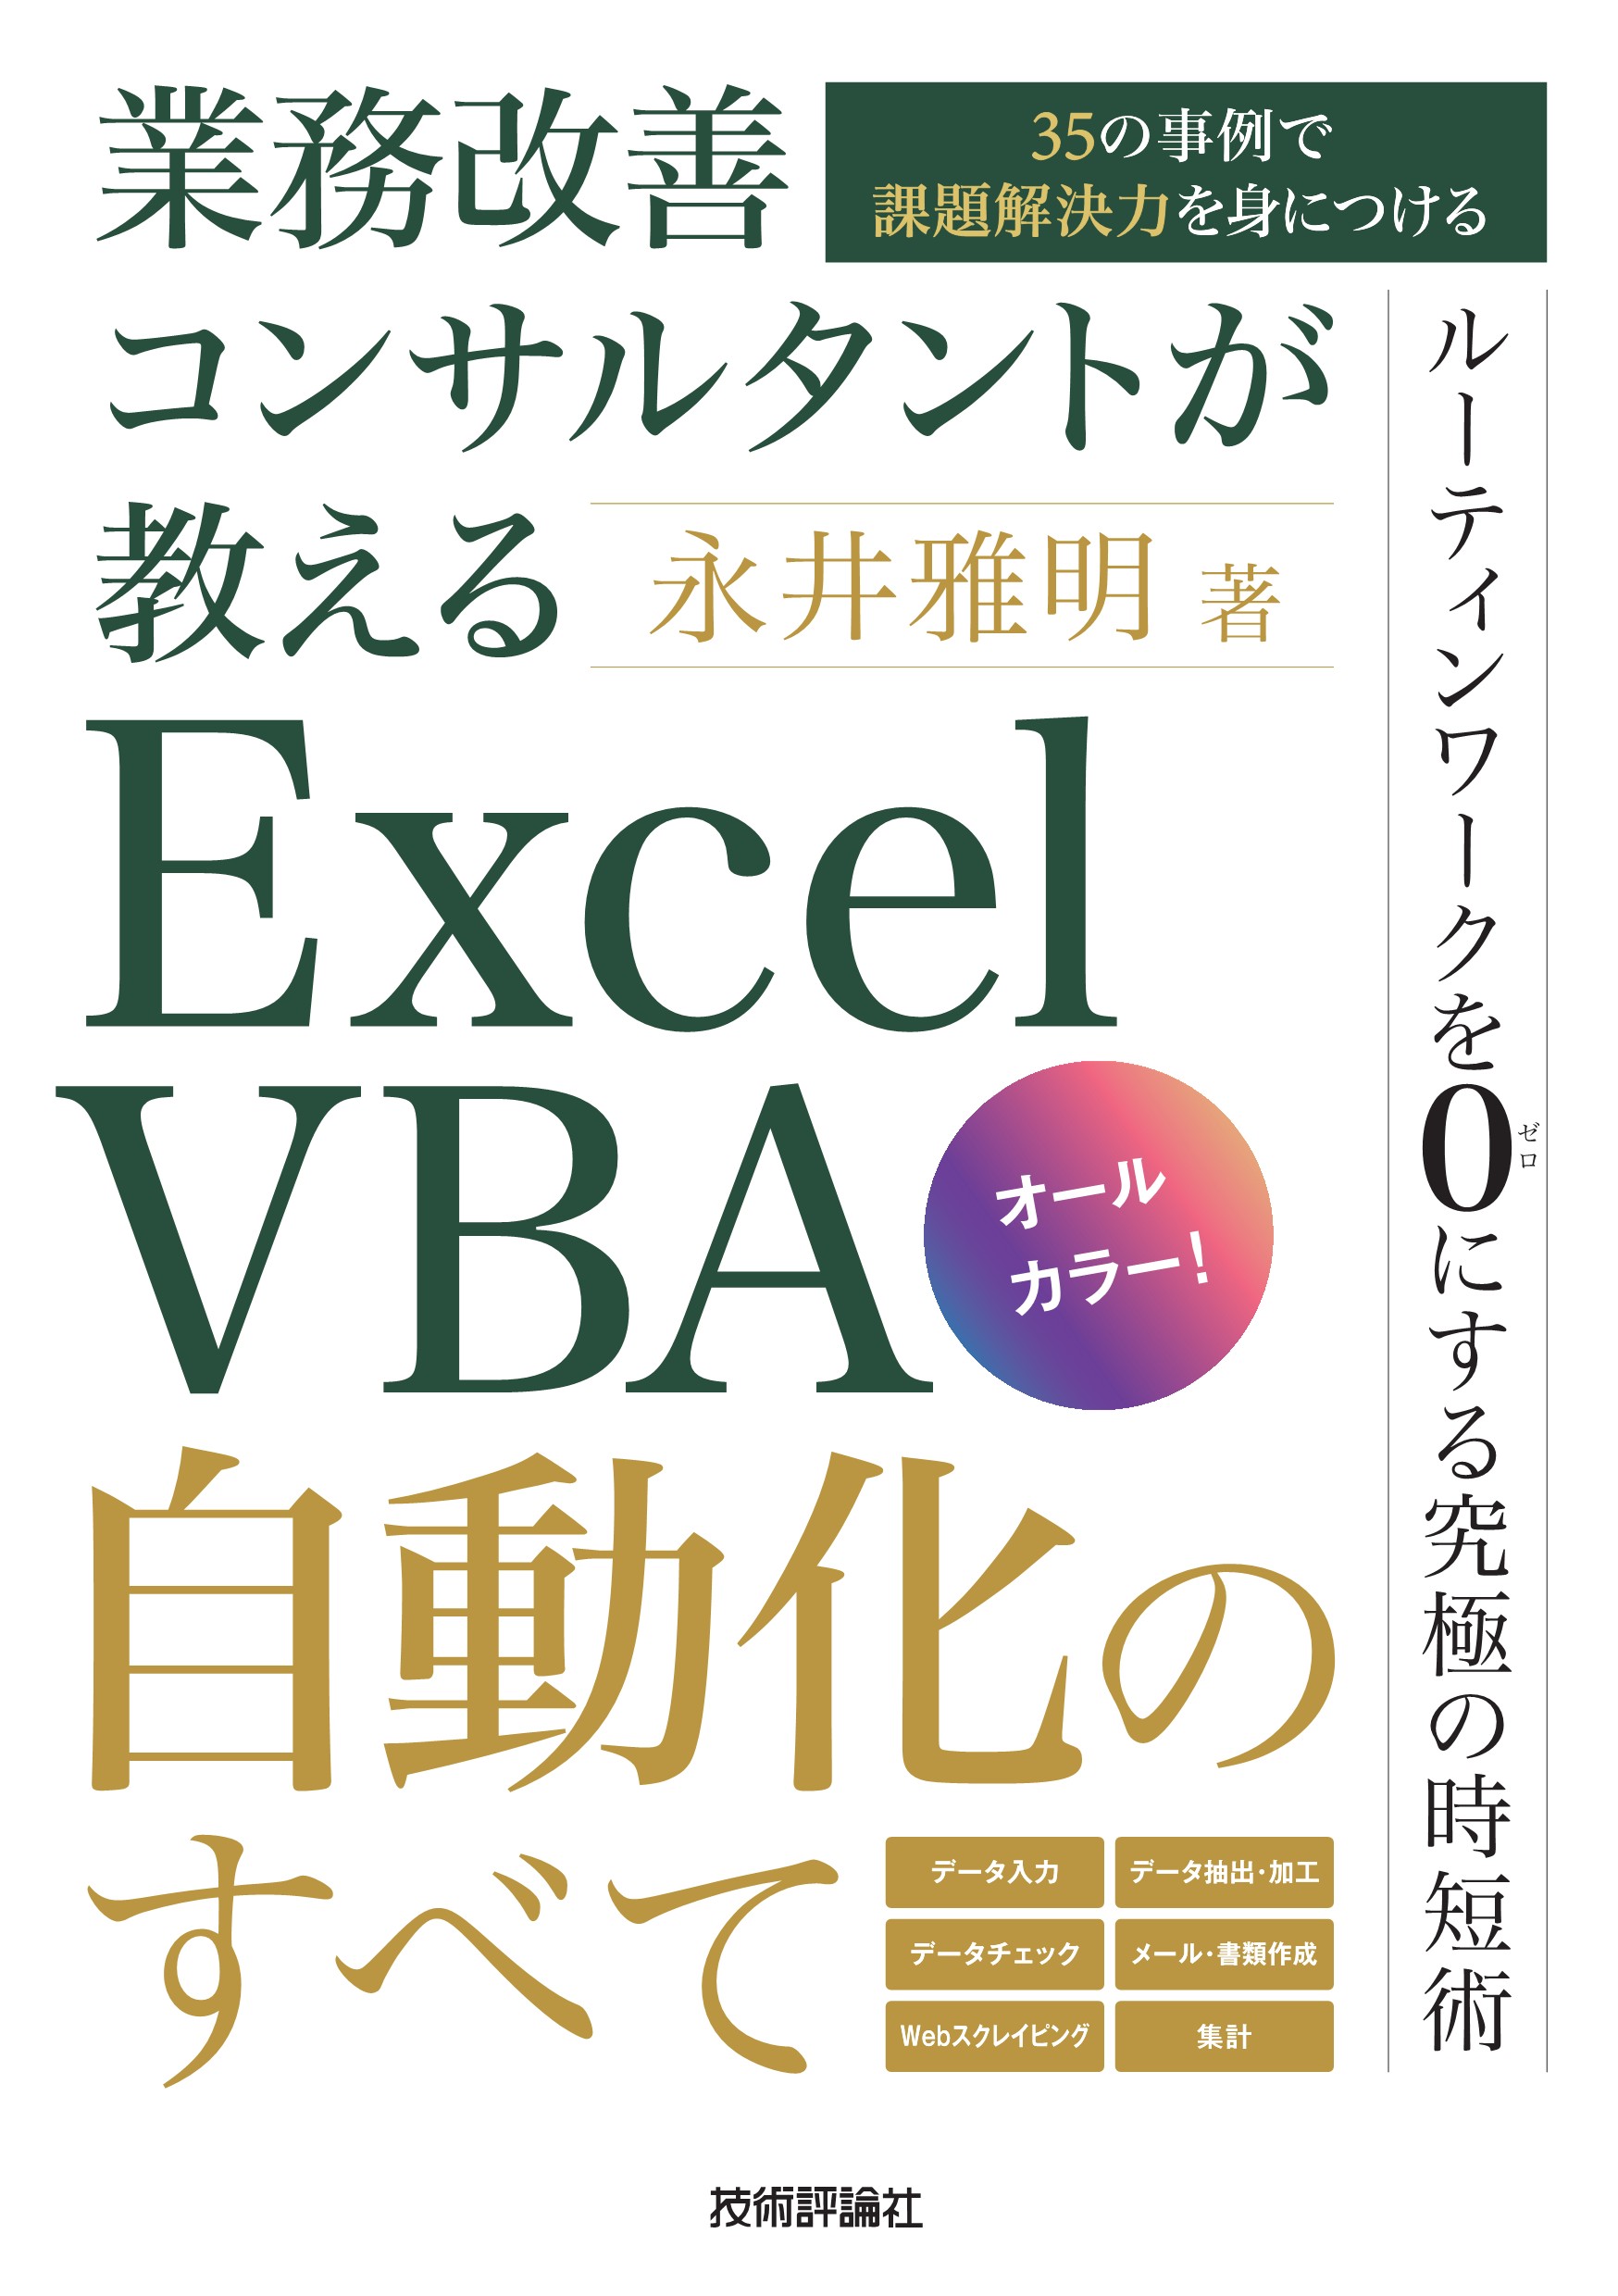 会員書籍「Excel VBA自動化のすべて〜35の事例で課題解決力を身につける〜」